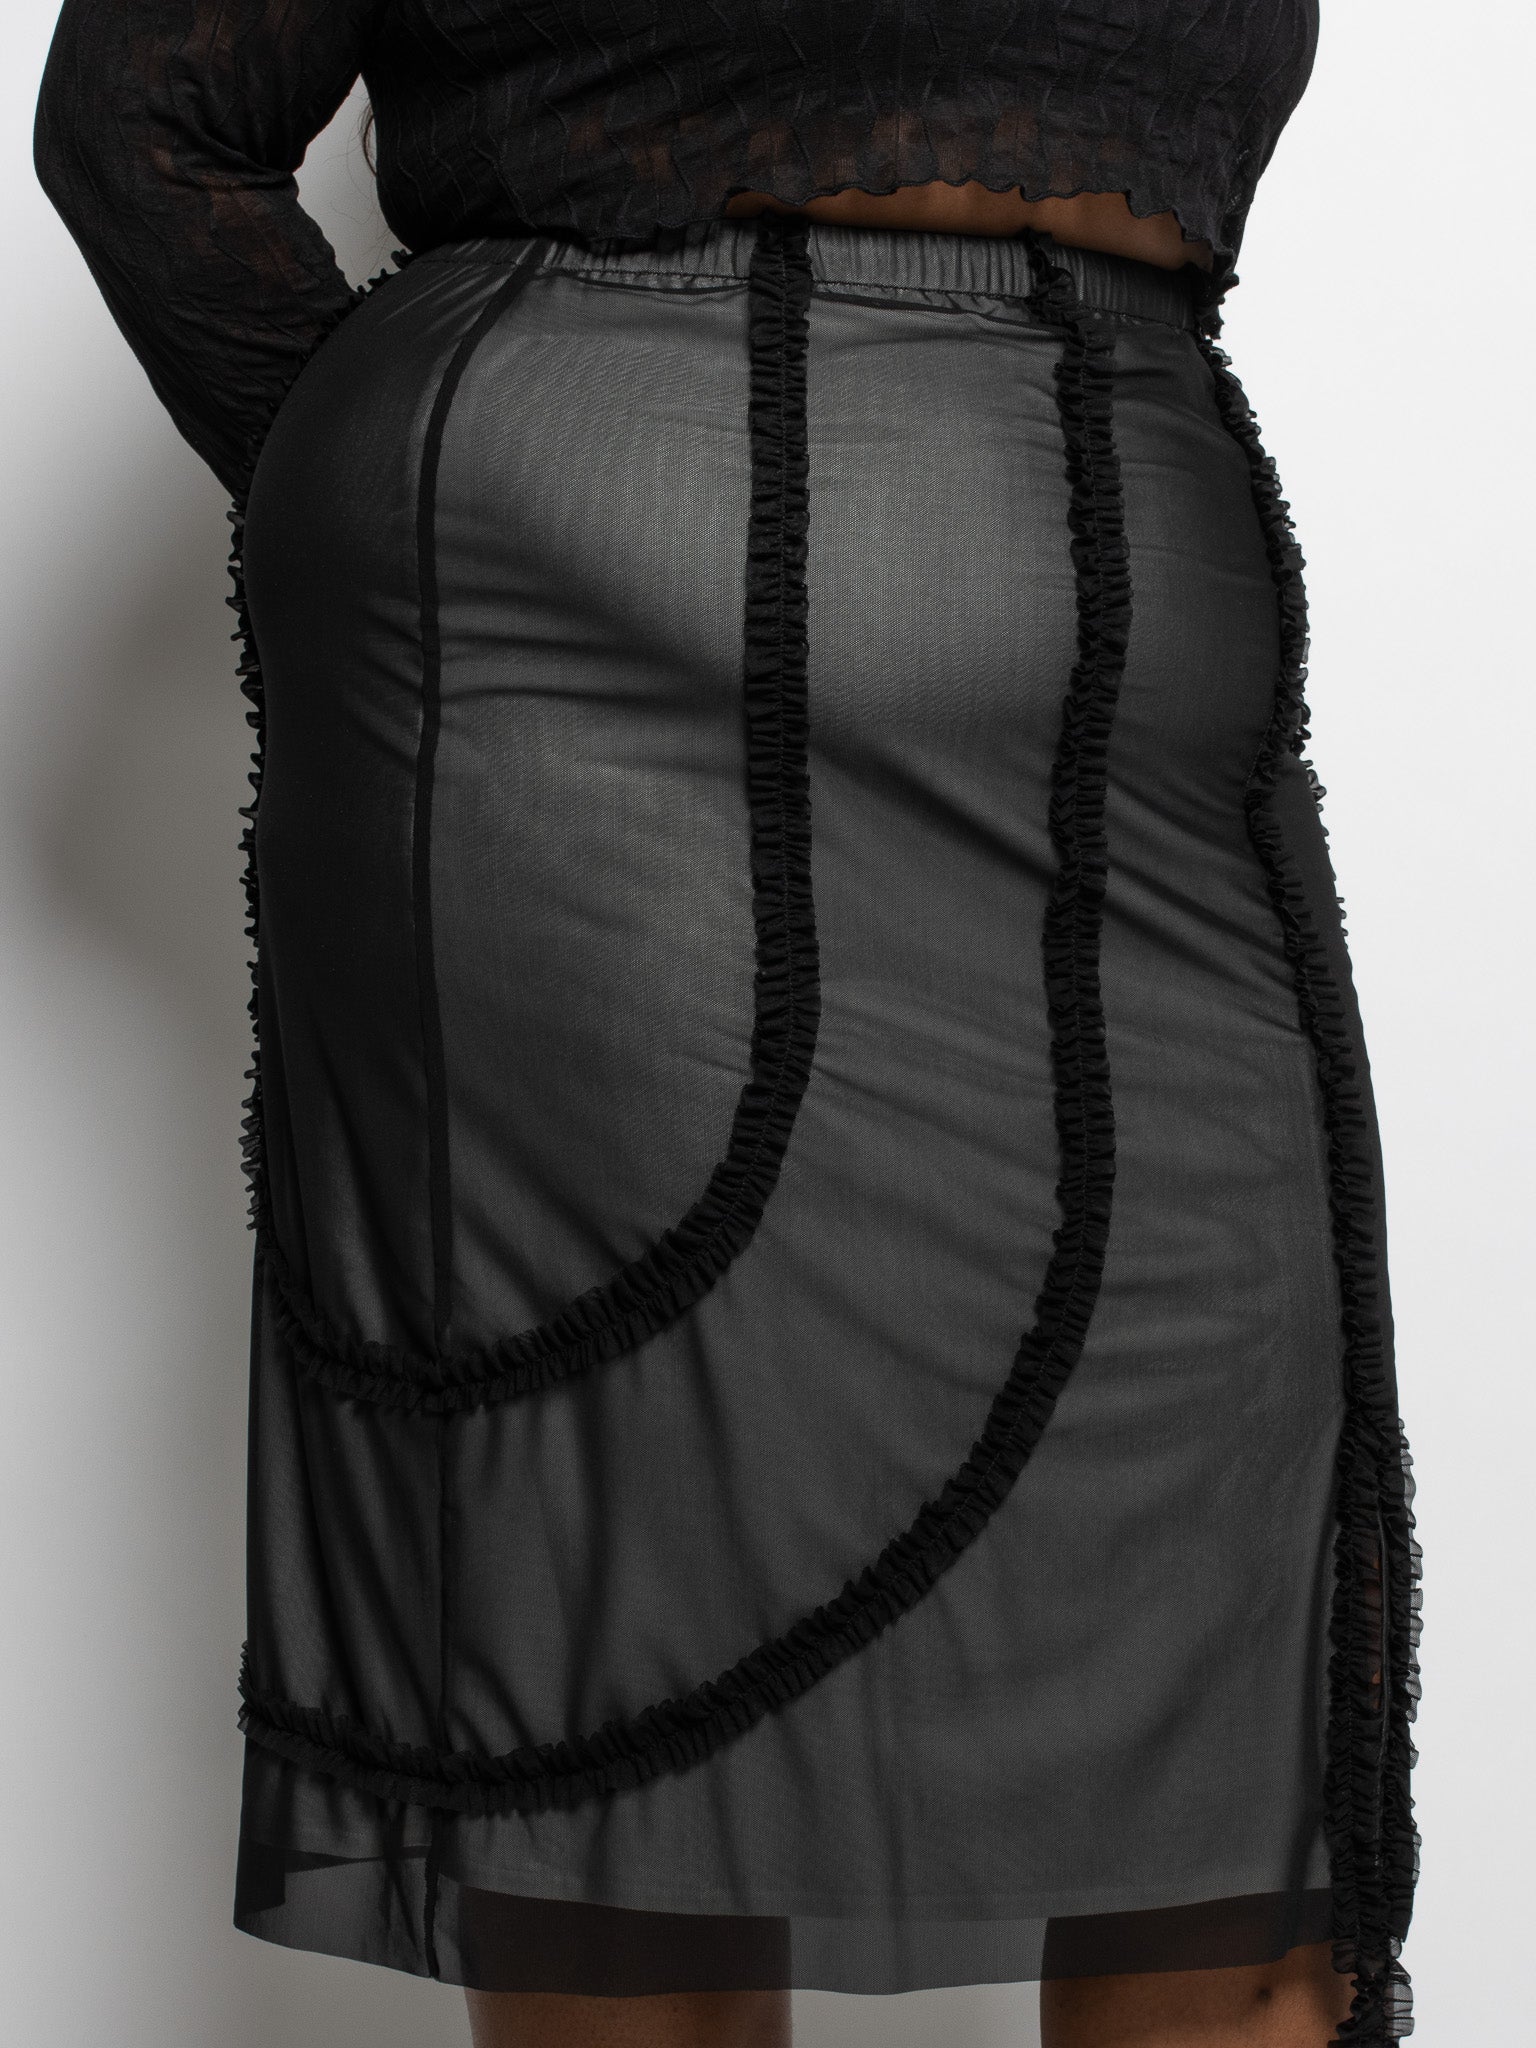 Greta Garmel - Ruffle Skirt (L-4X)